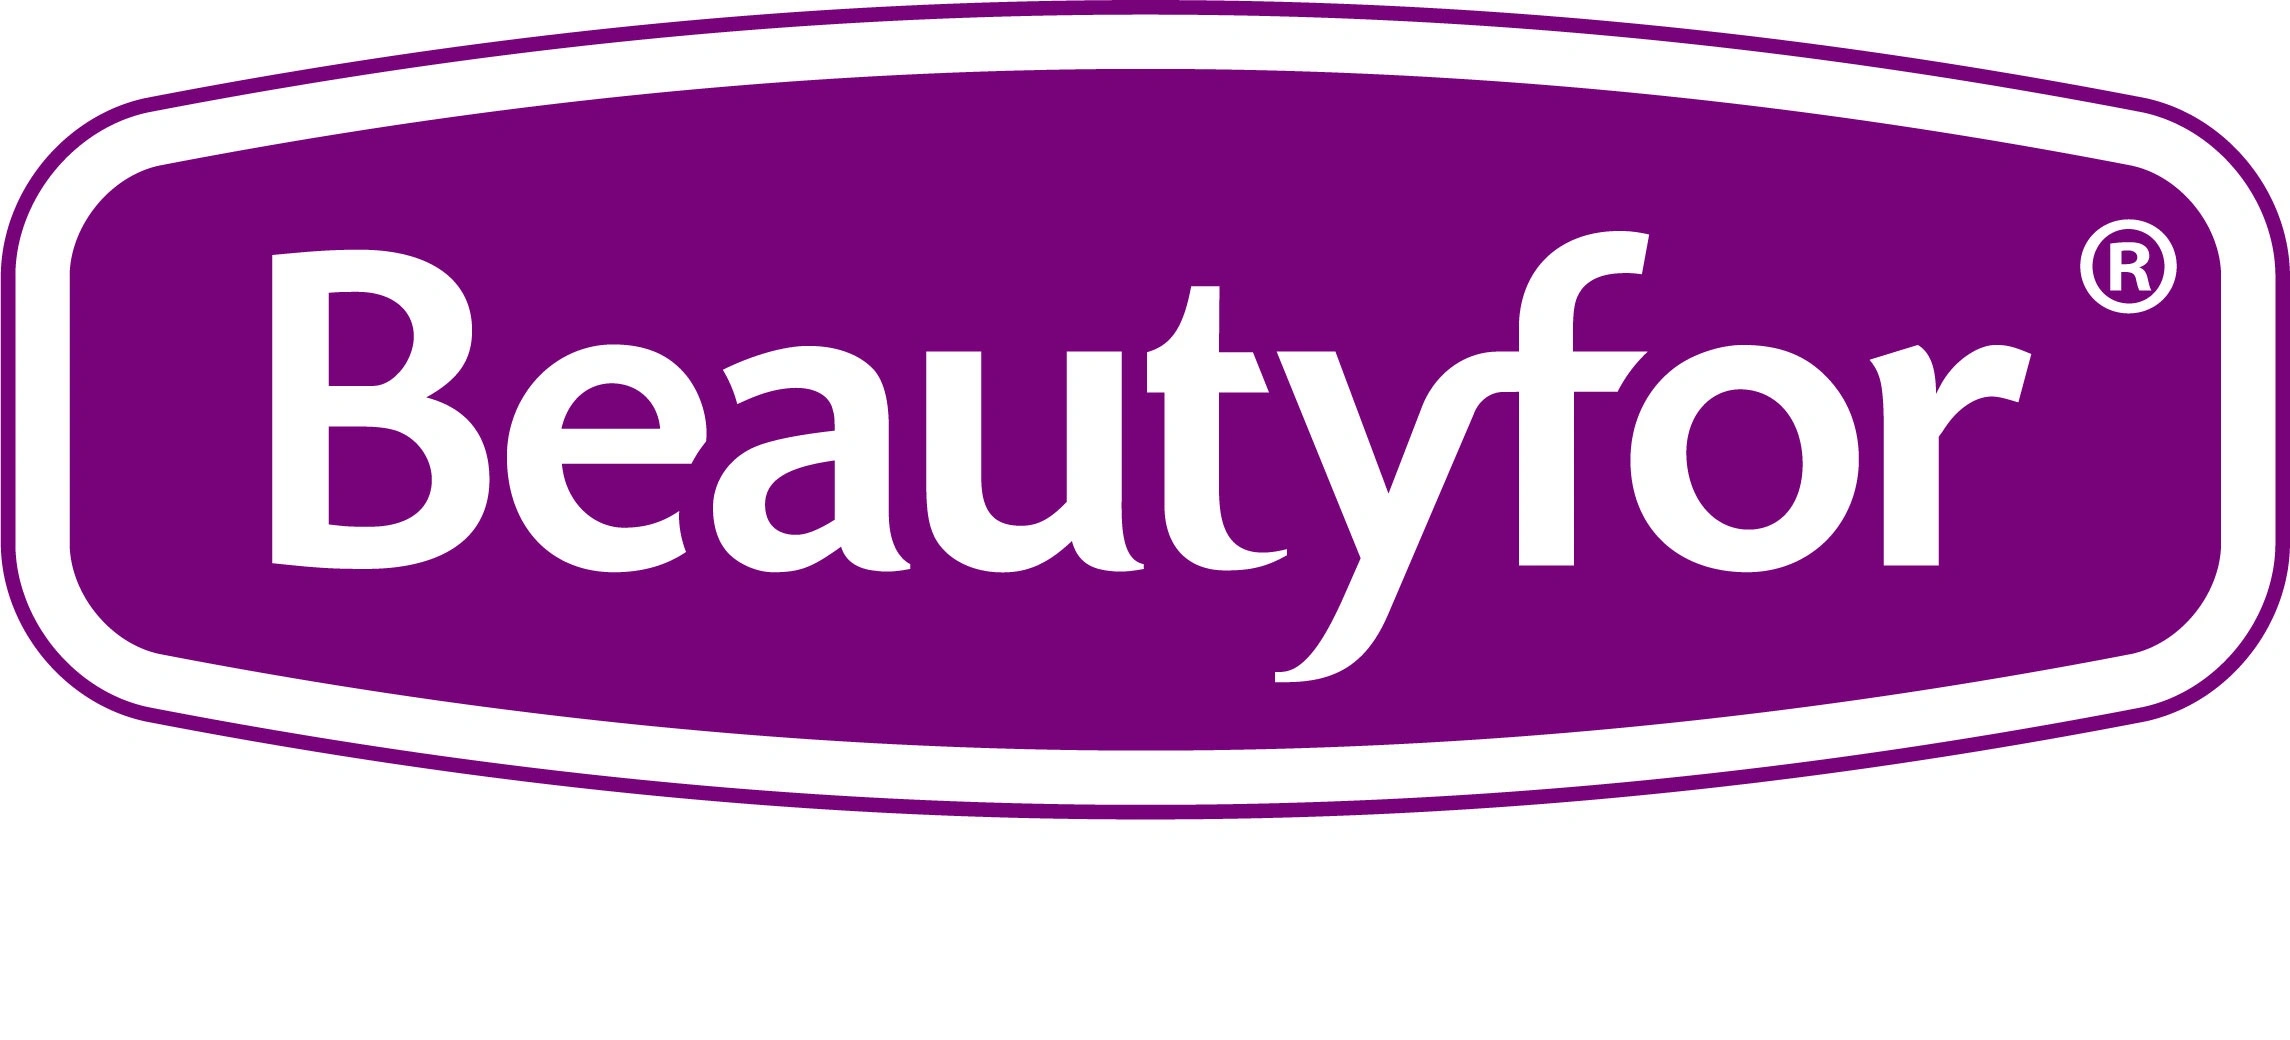 Beautyfor